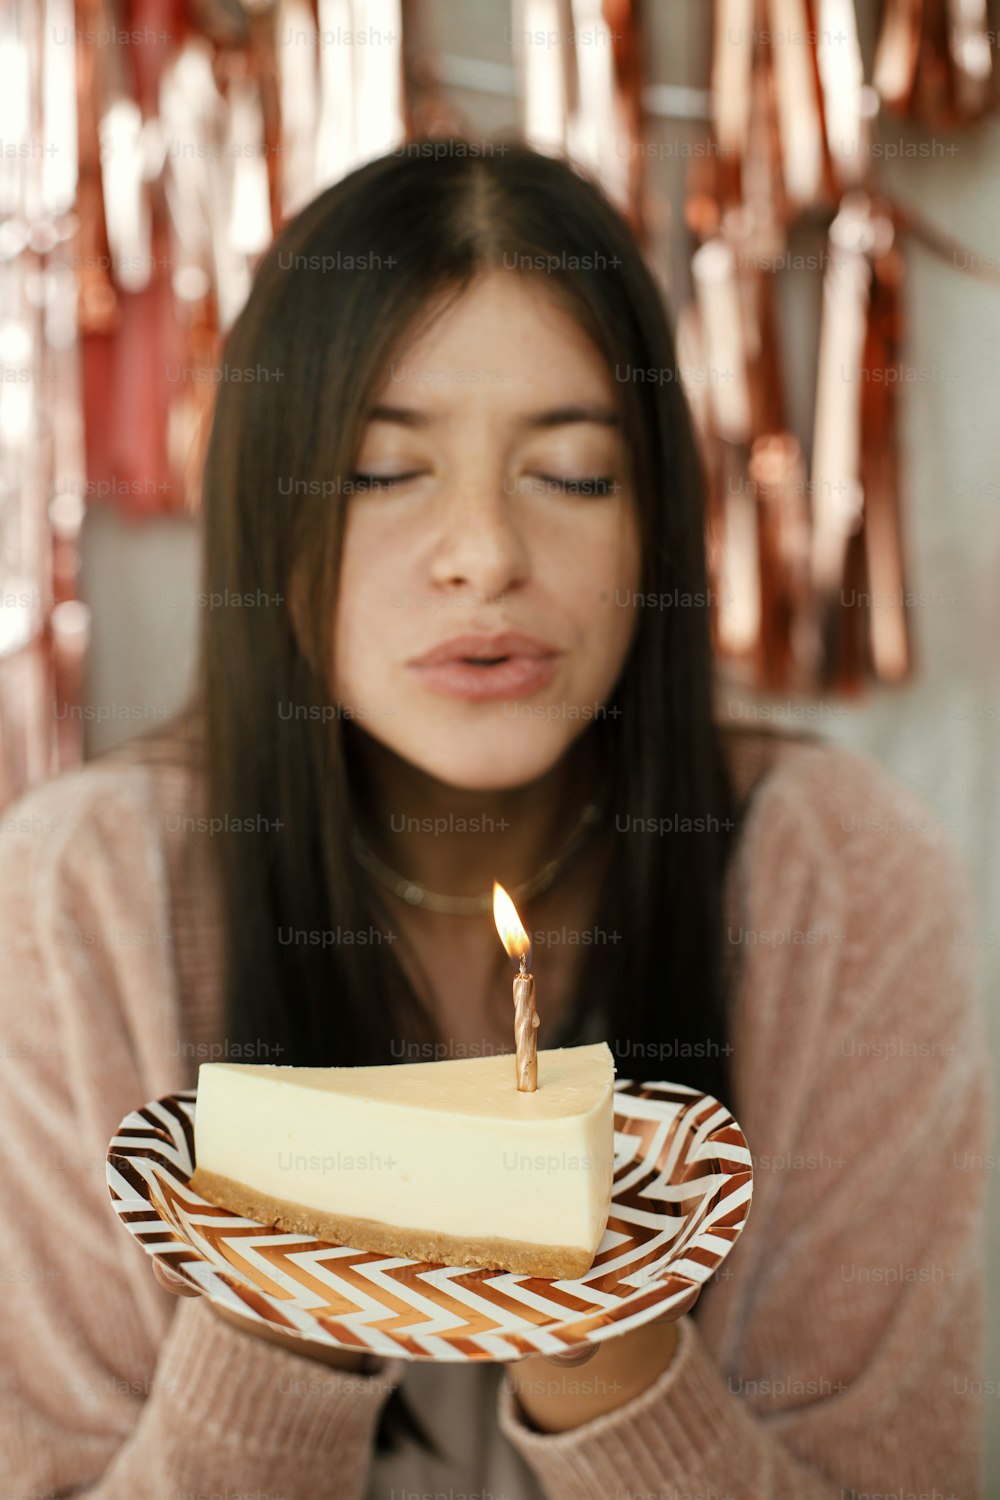 Pedaço de bolo de aniversário moderno com vela acesa na mão no fundo da mulher feliz e guirlanda de borla de ouro rosa moderna no quarto. Comemorando aniversário em casa. Faça um desejo